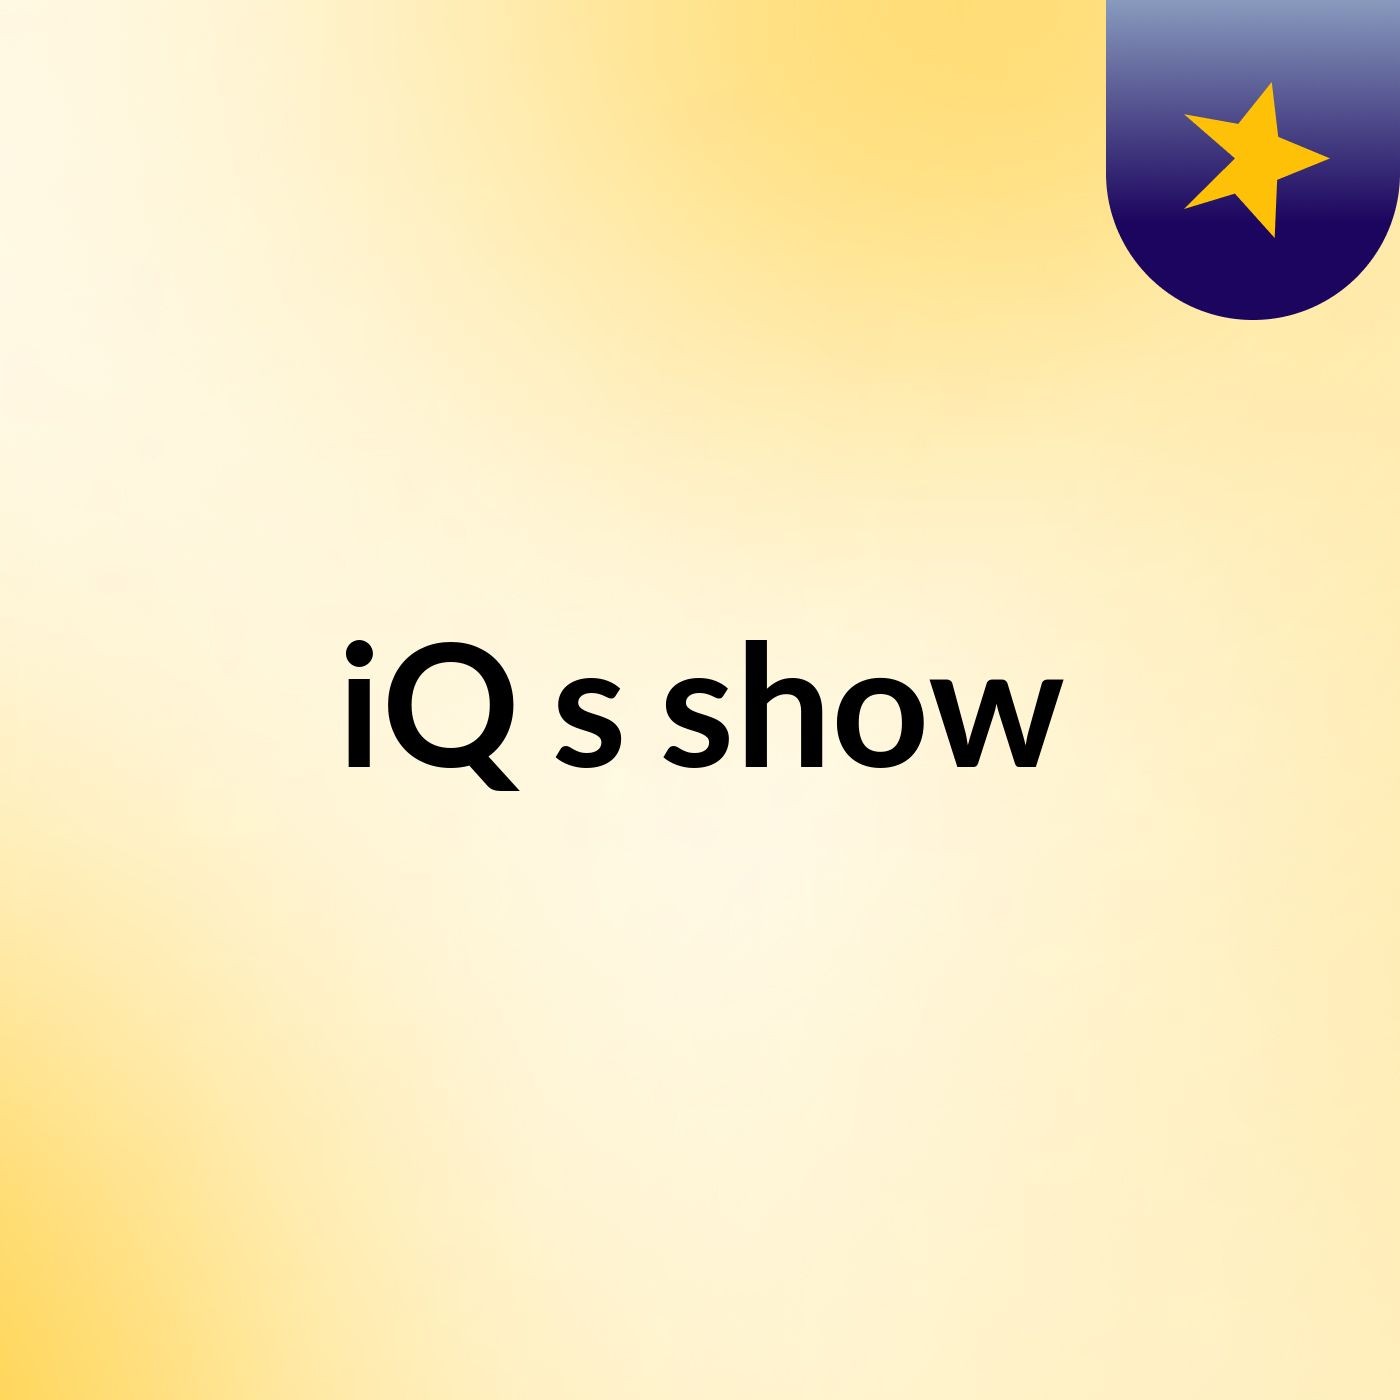 iQ's show